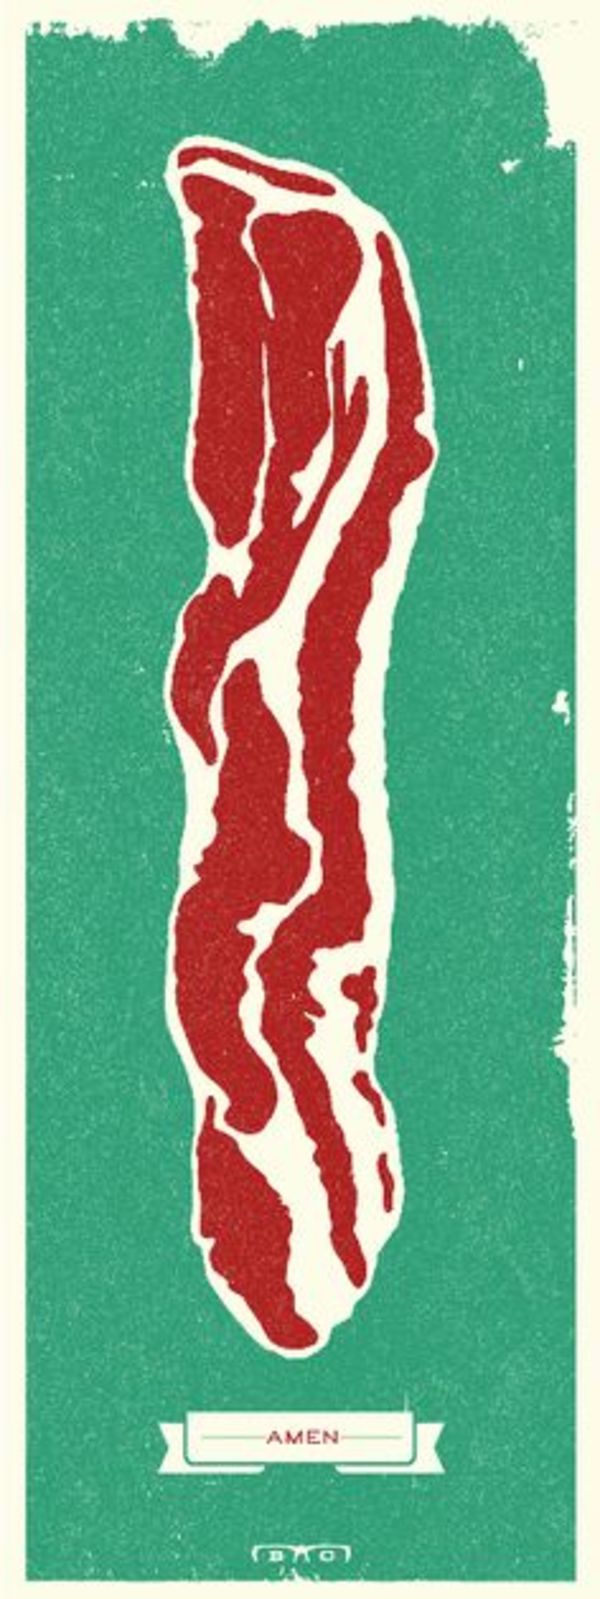 Bacon by M. Brady Clark